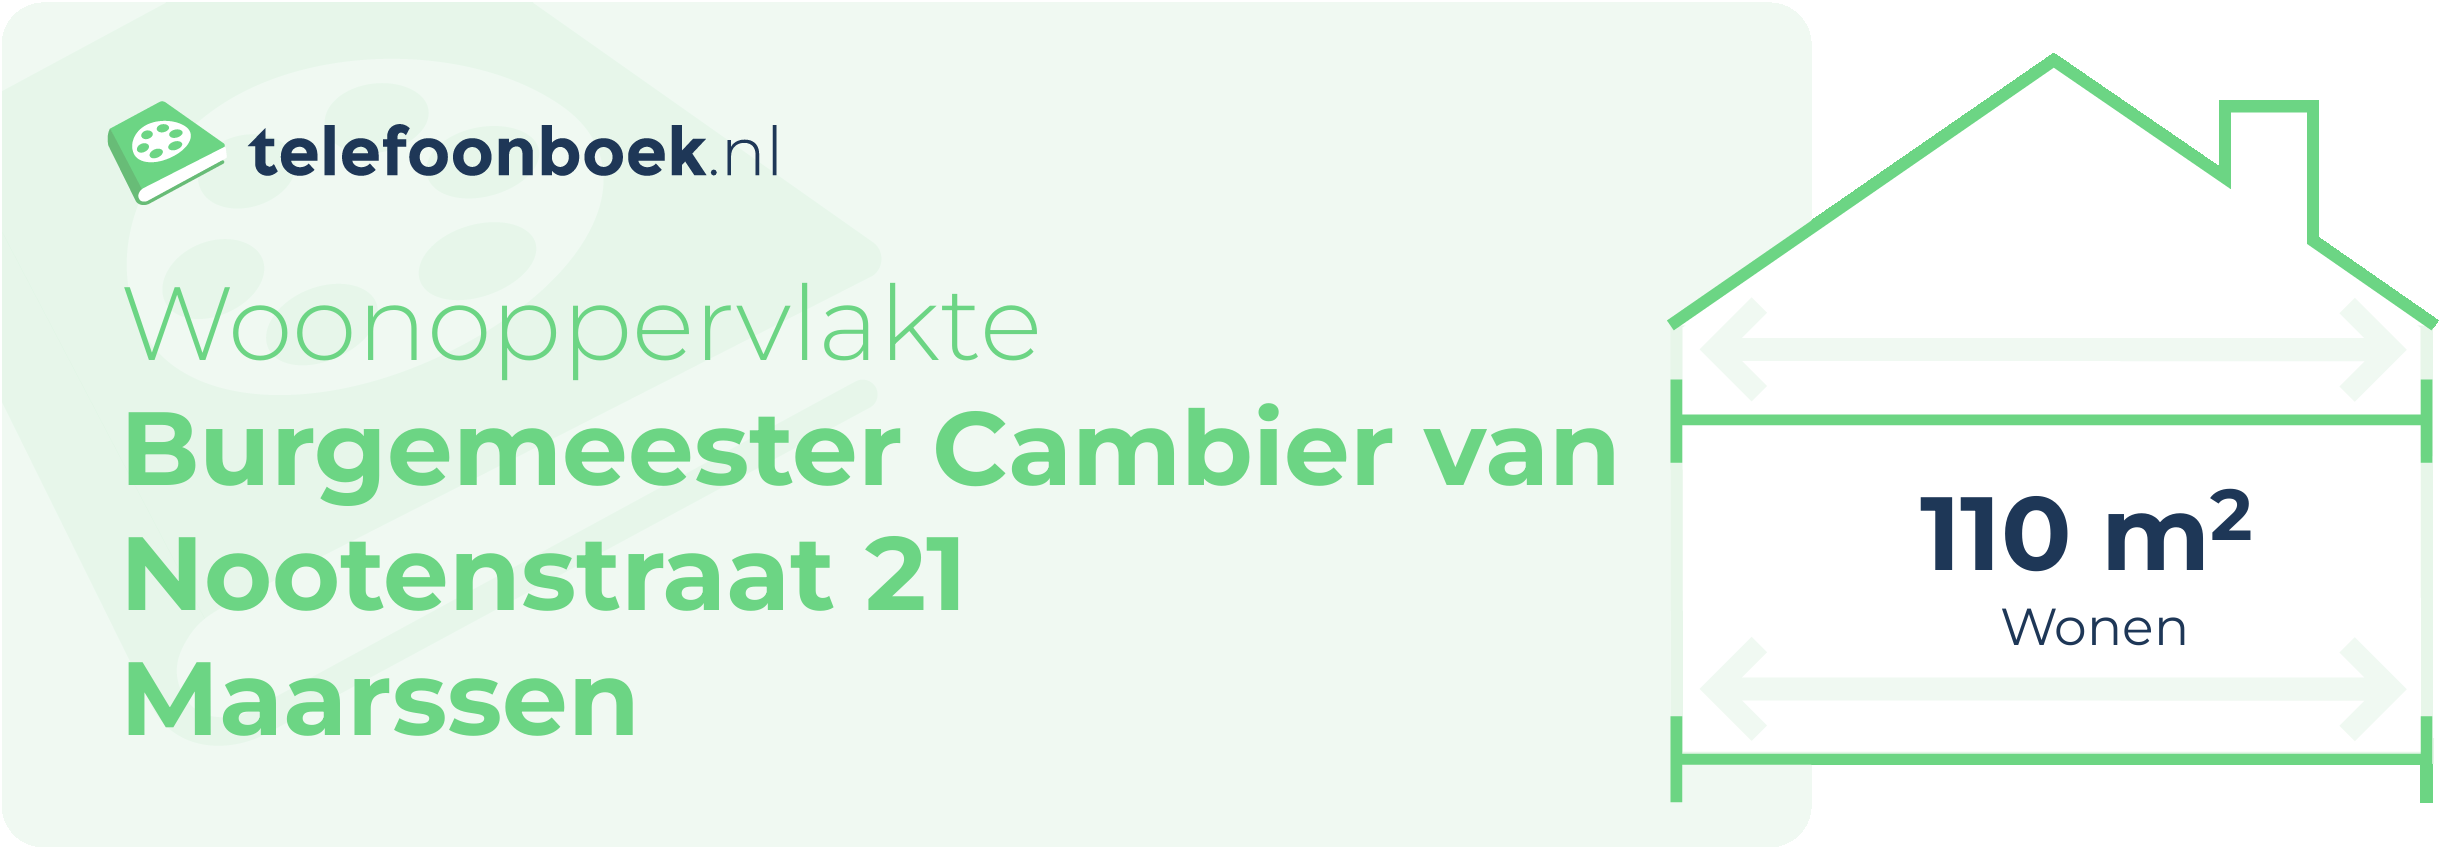 Woonoppervlakte Burgemeester Cambier Van Nootenstraat 21 Maarssen